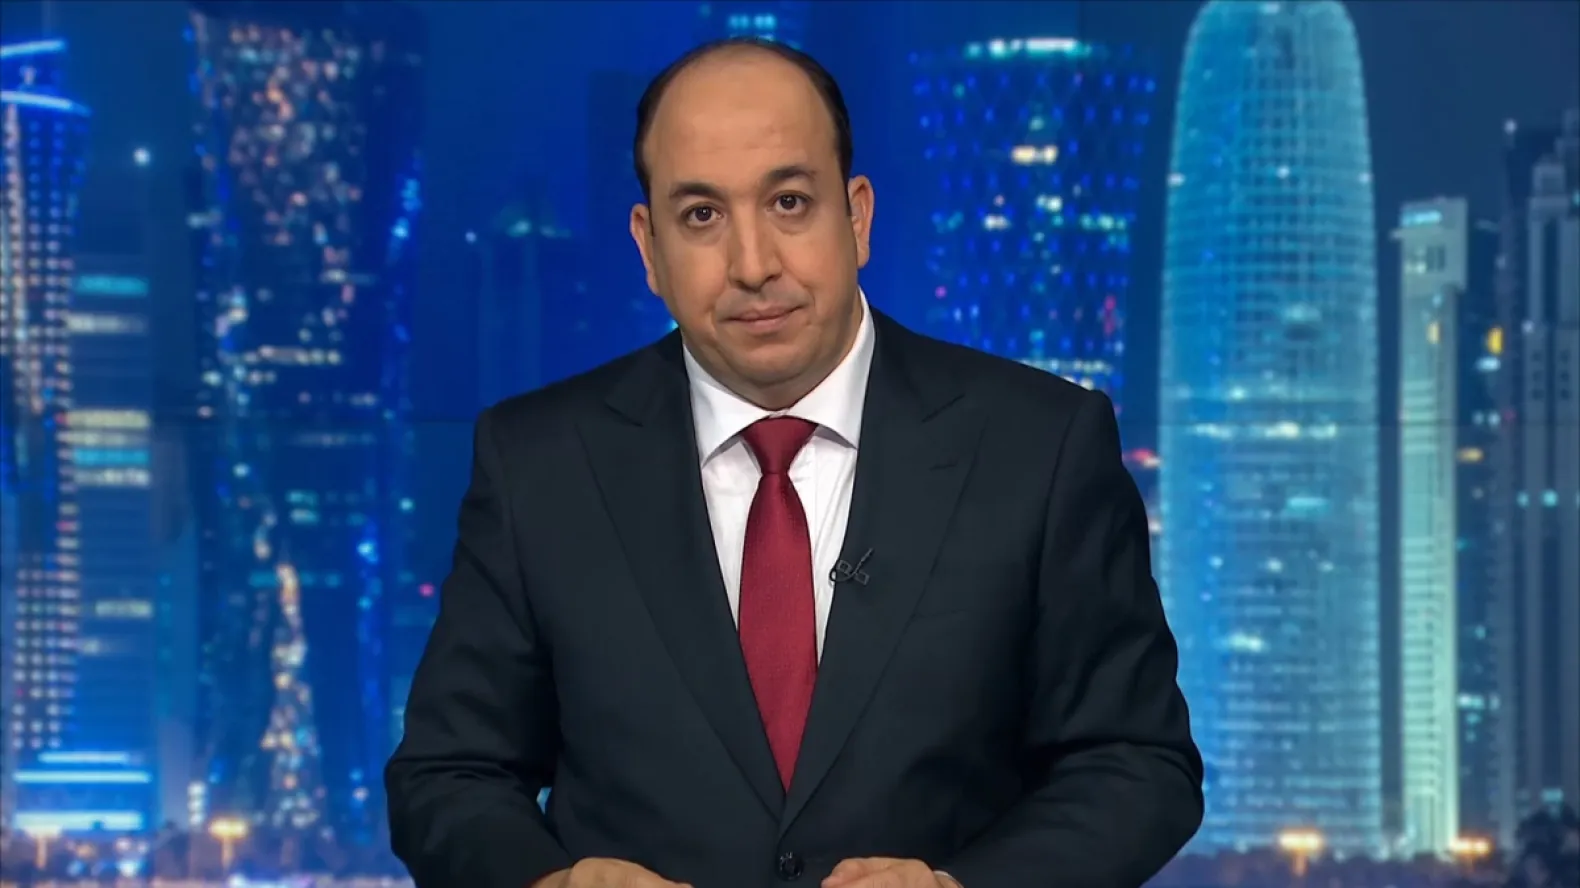 قناة الجزيرة تستغني عن مذيعين بينهما المغربي عبد الصمد ناصر